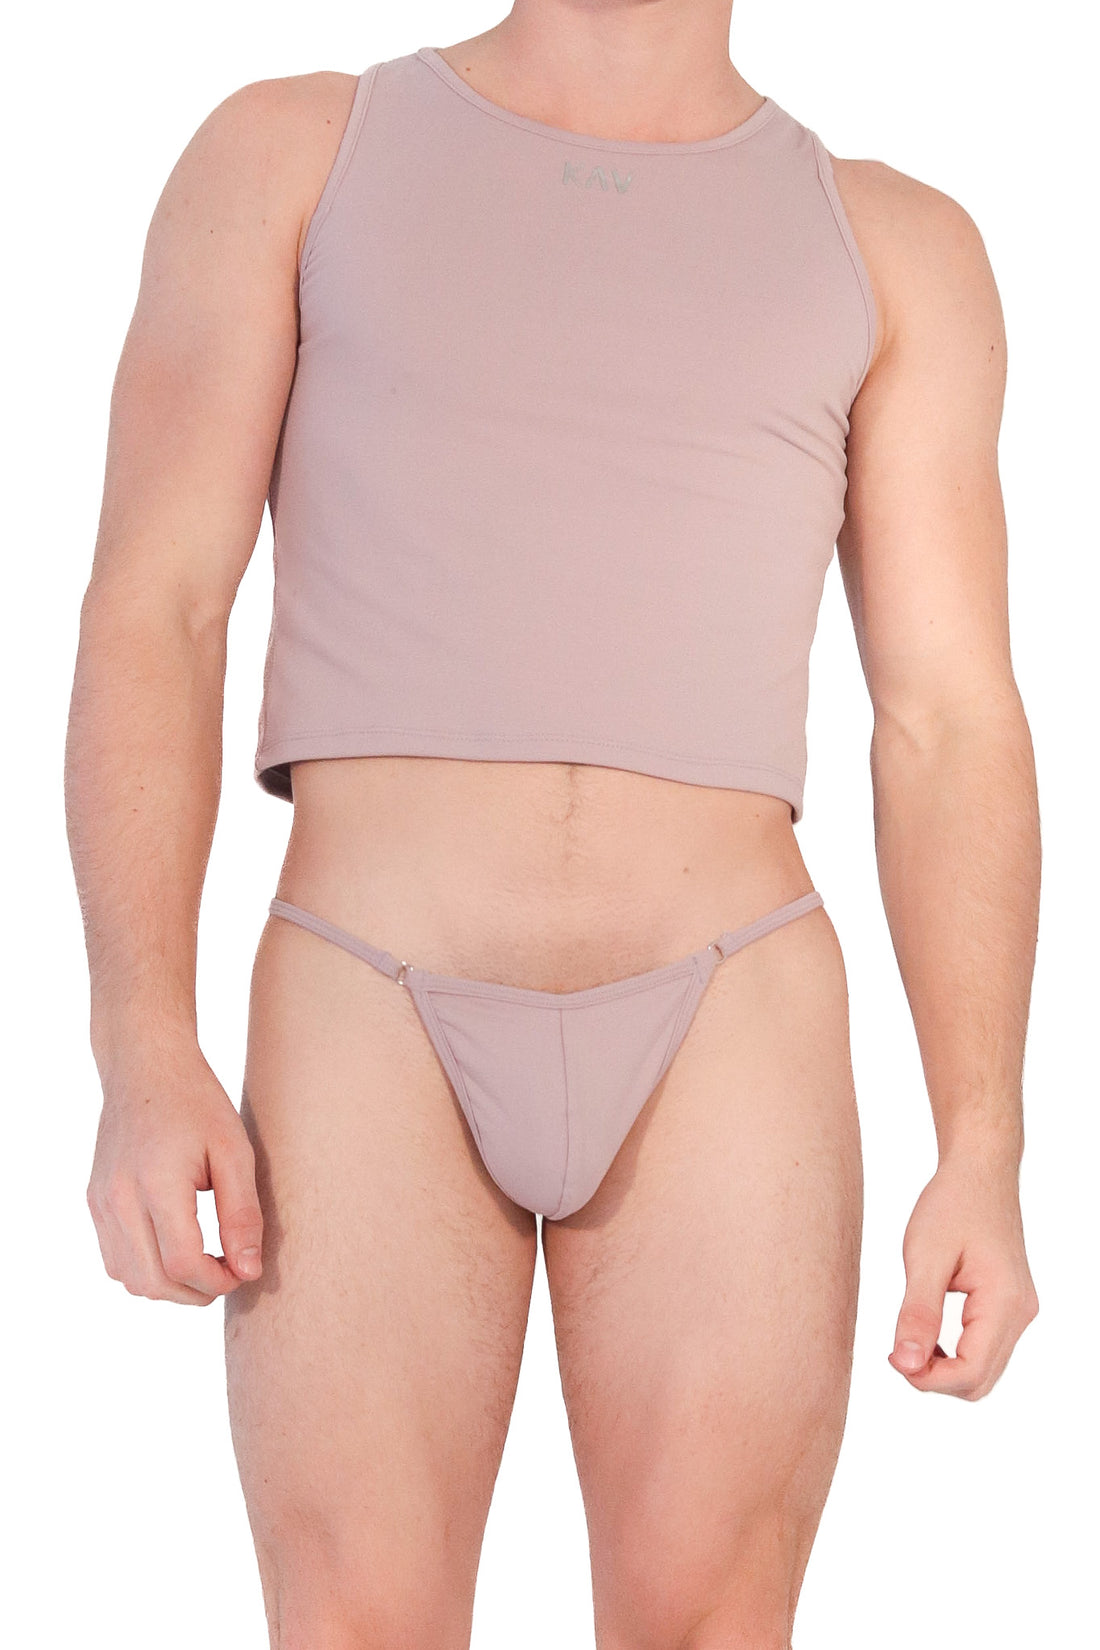 Underwear Men Bottoms – Wear KAV